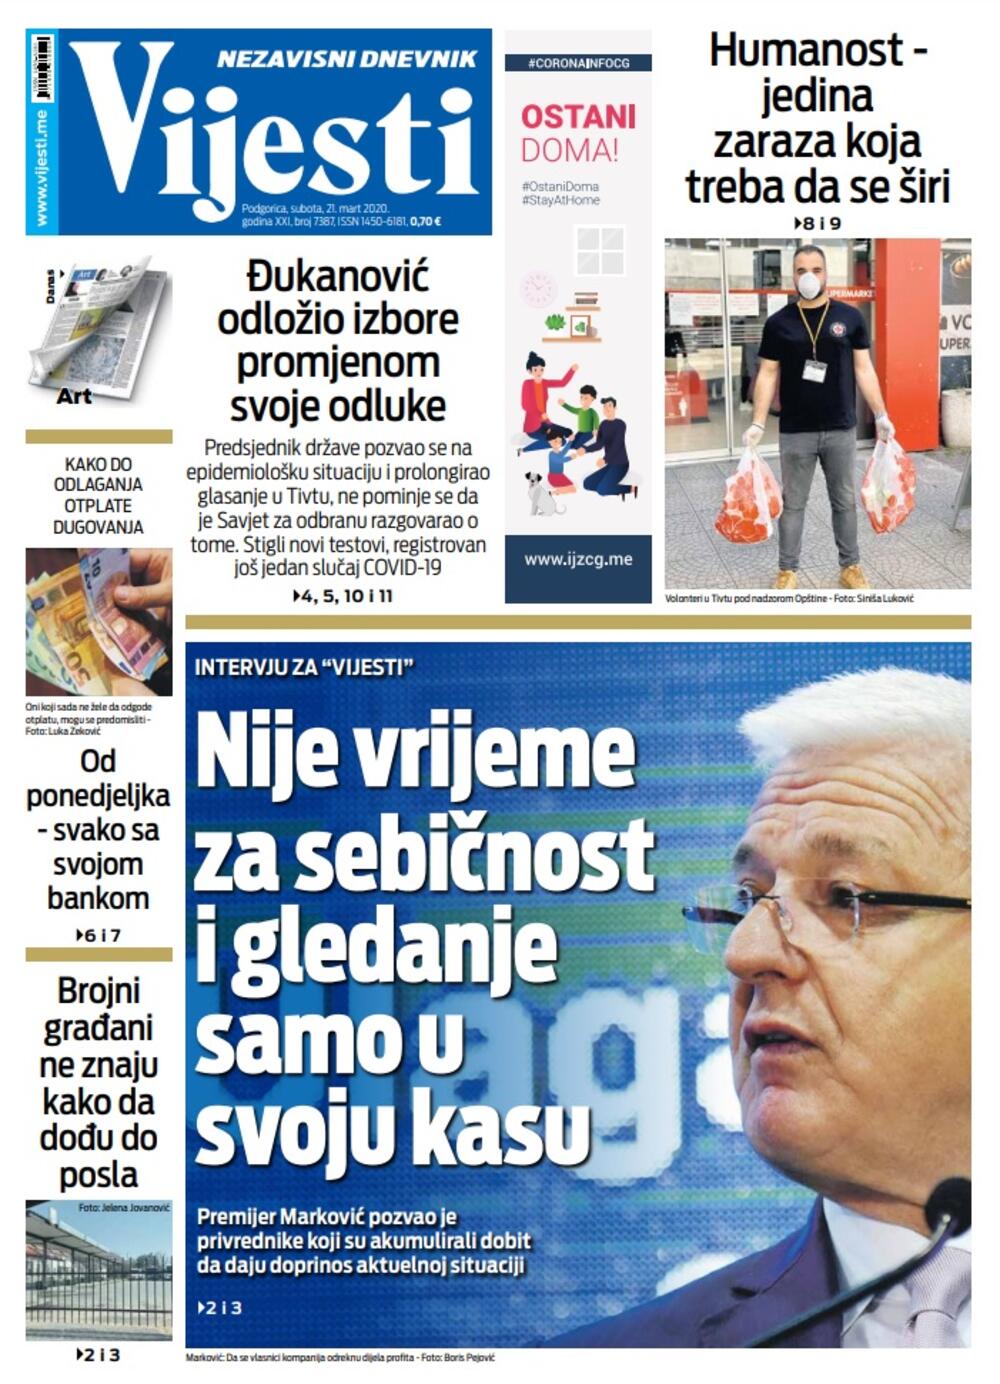 Naslovna strana "Vijesti" za 21. mart 2020. godine, Foto: Vijesti